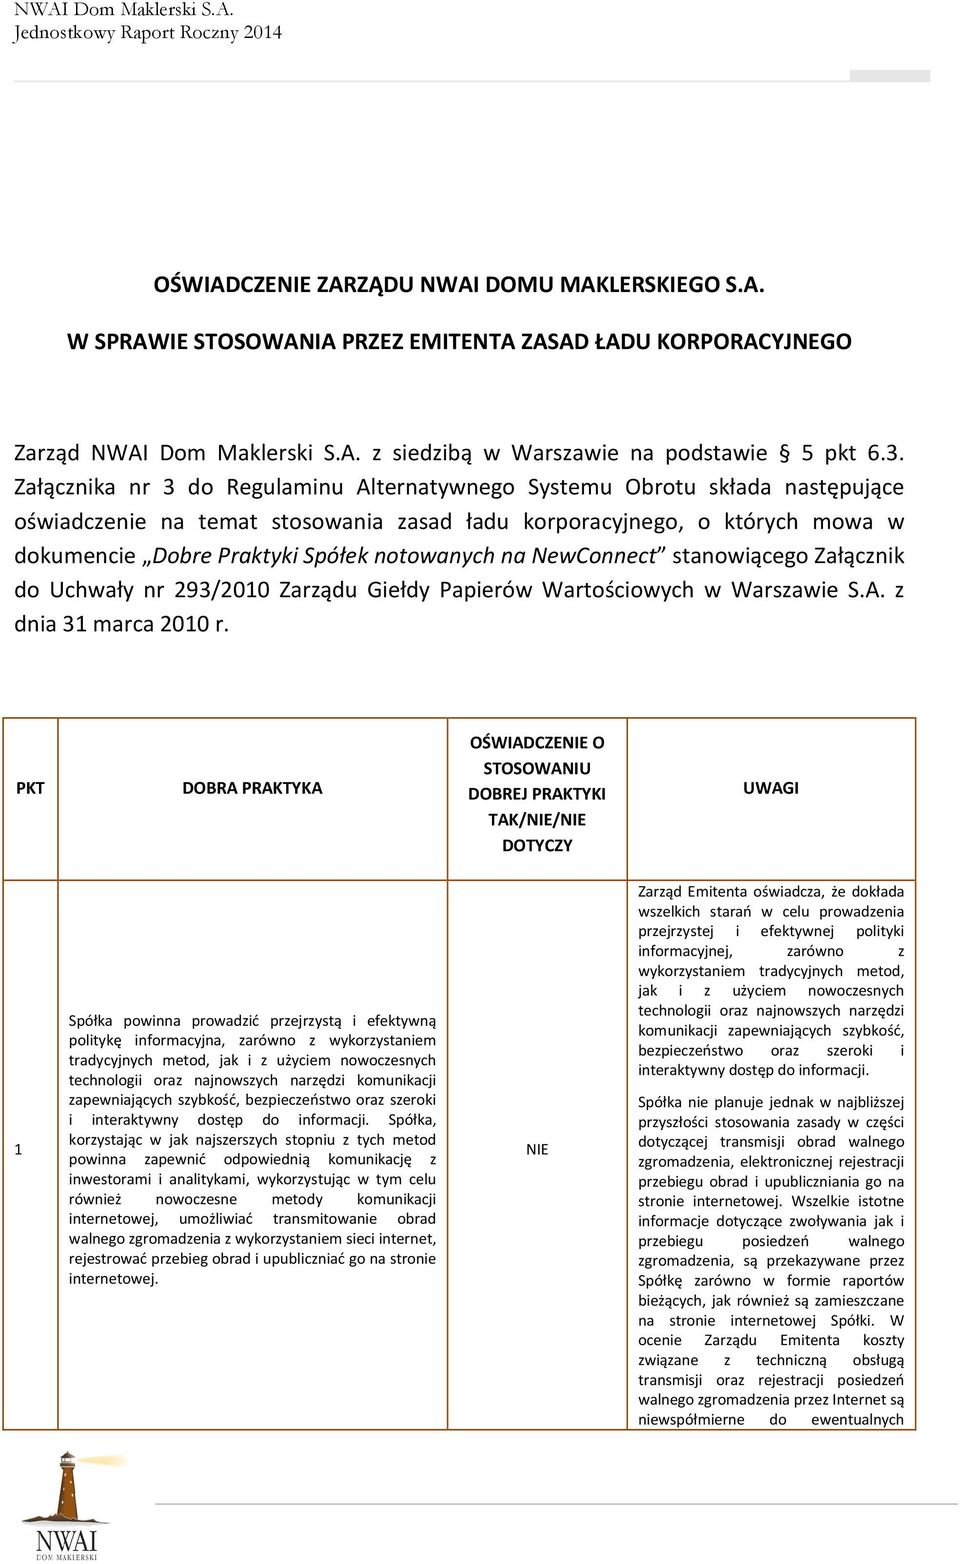 na NewConnect stanowiącego Załącznik do Uchwały nr 293/2010 Zarządu Giełdy Papierów Wartościowych w Warszawie S.A. z dnia 31 marca 2010 r.